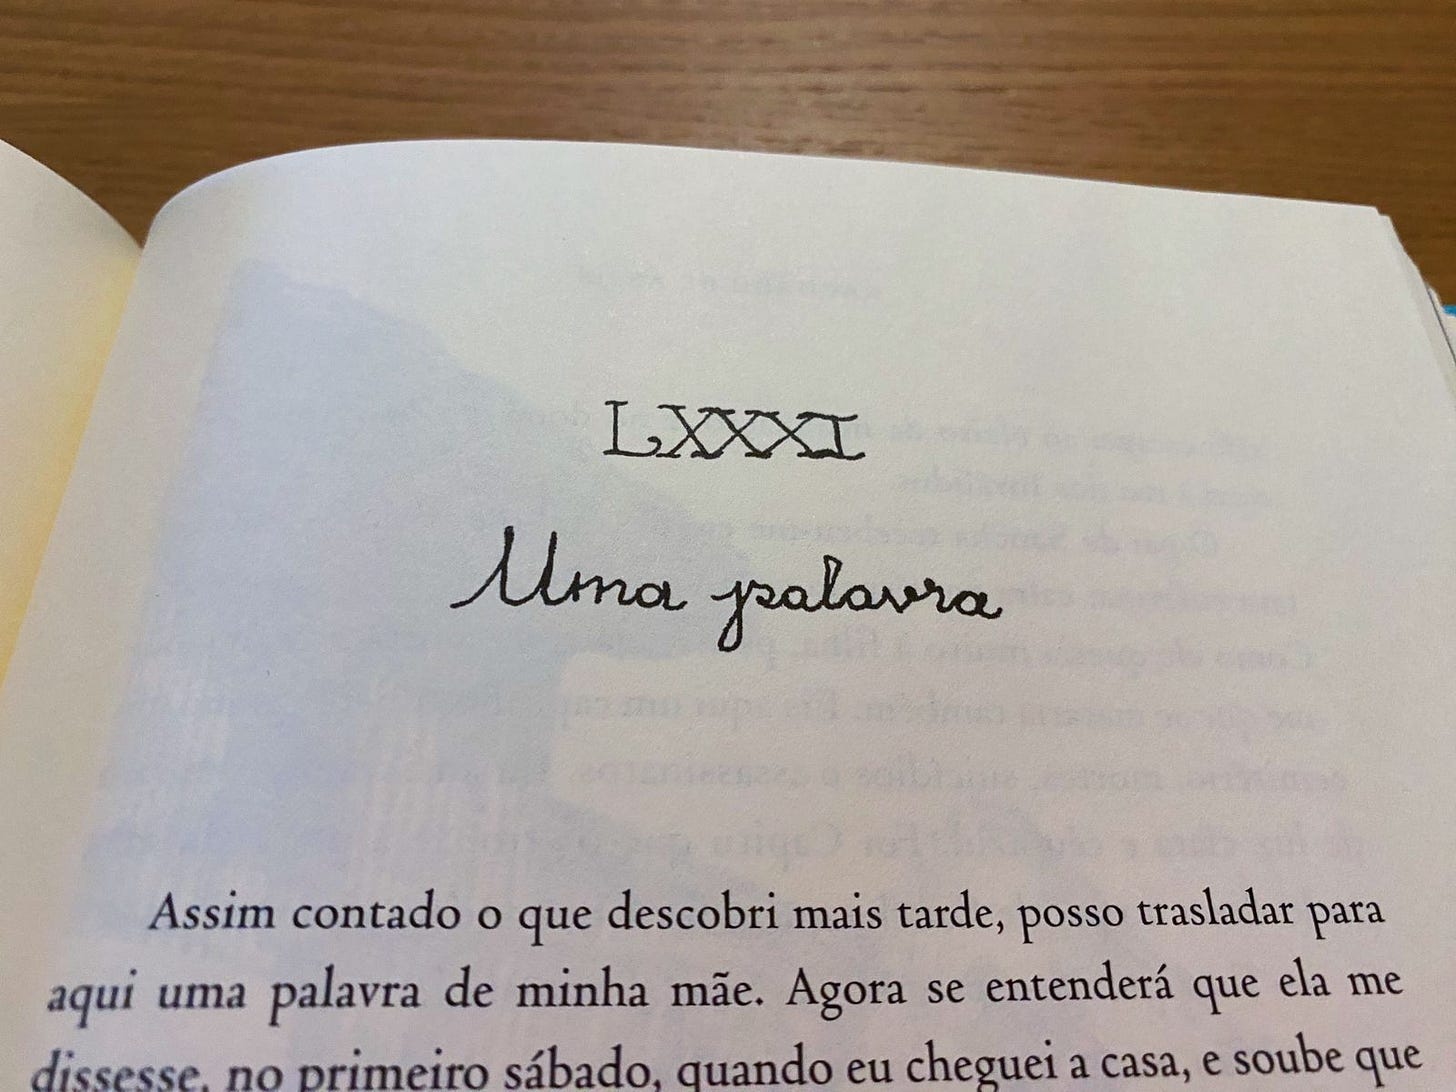 Capítulo LXXXI: "Uma Palavra" escrita em letra cursiva